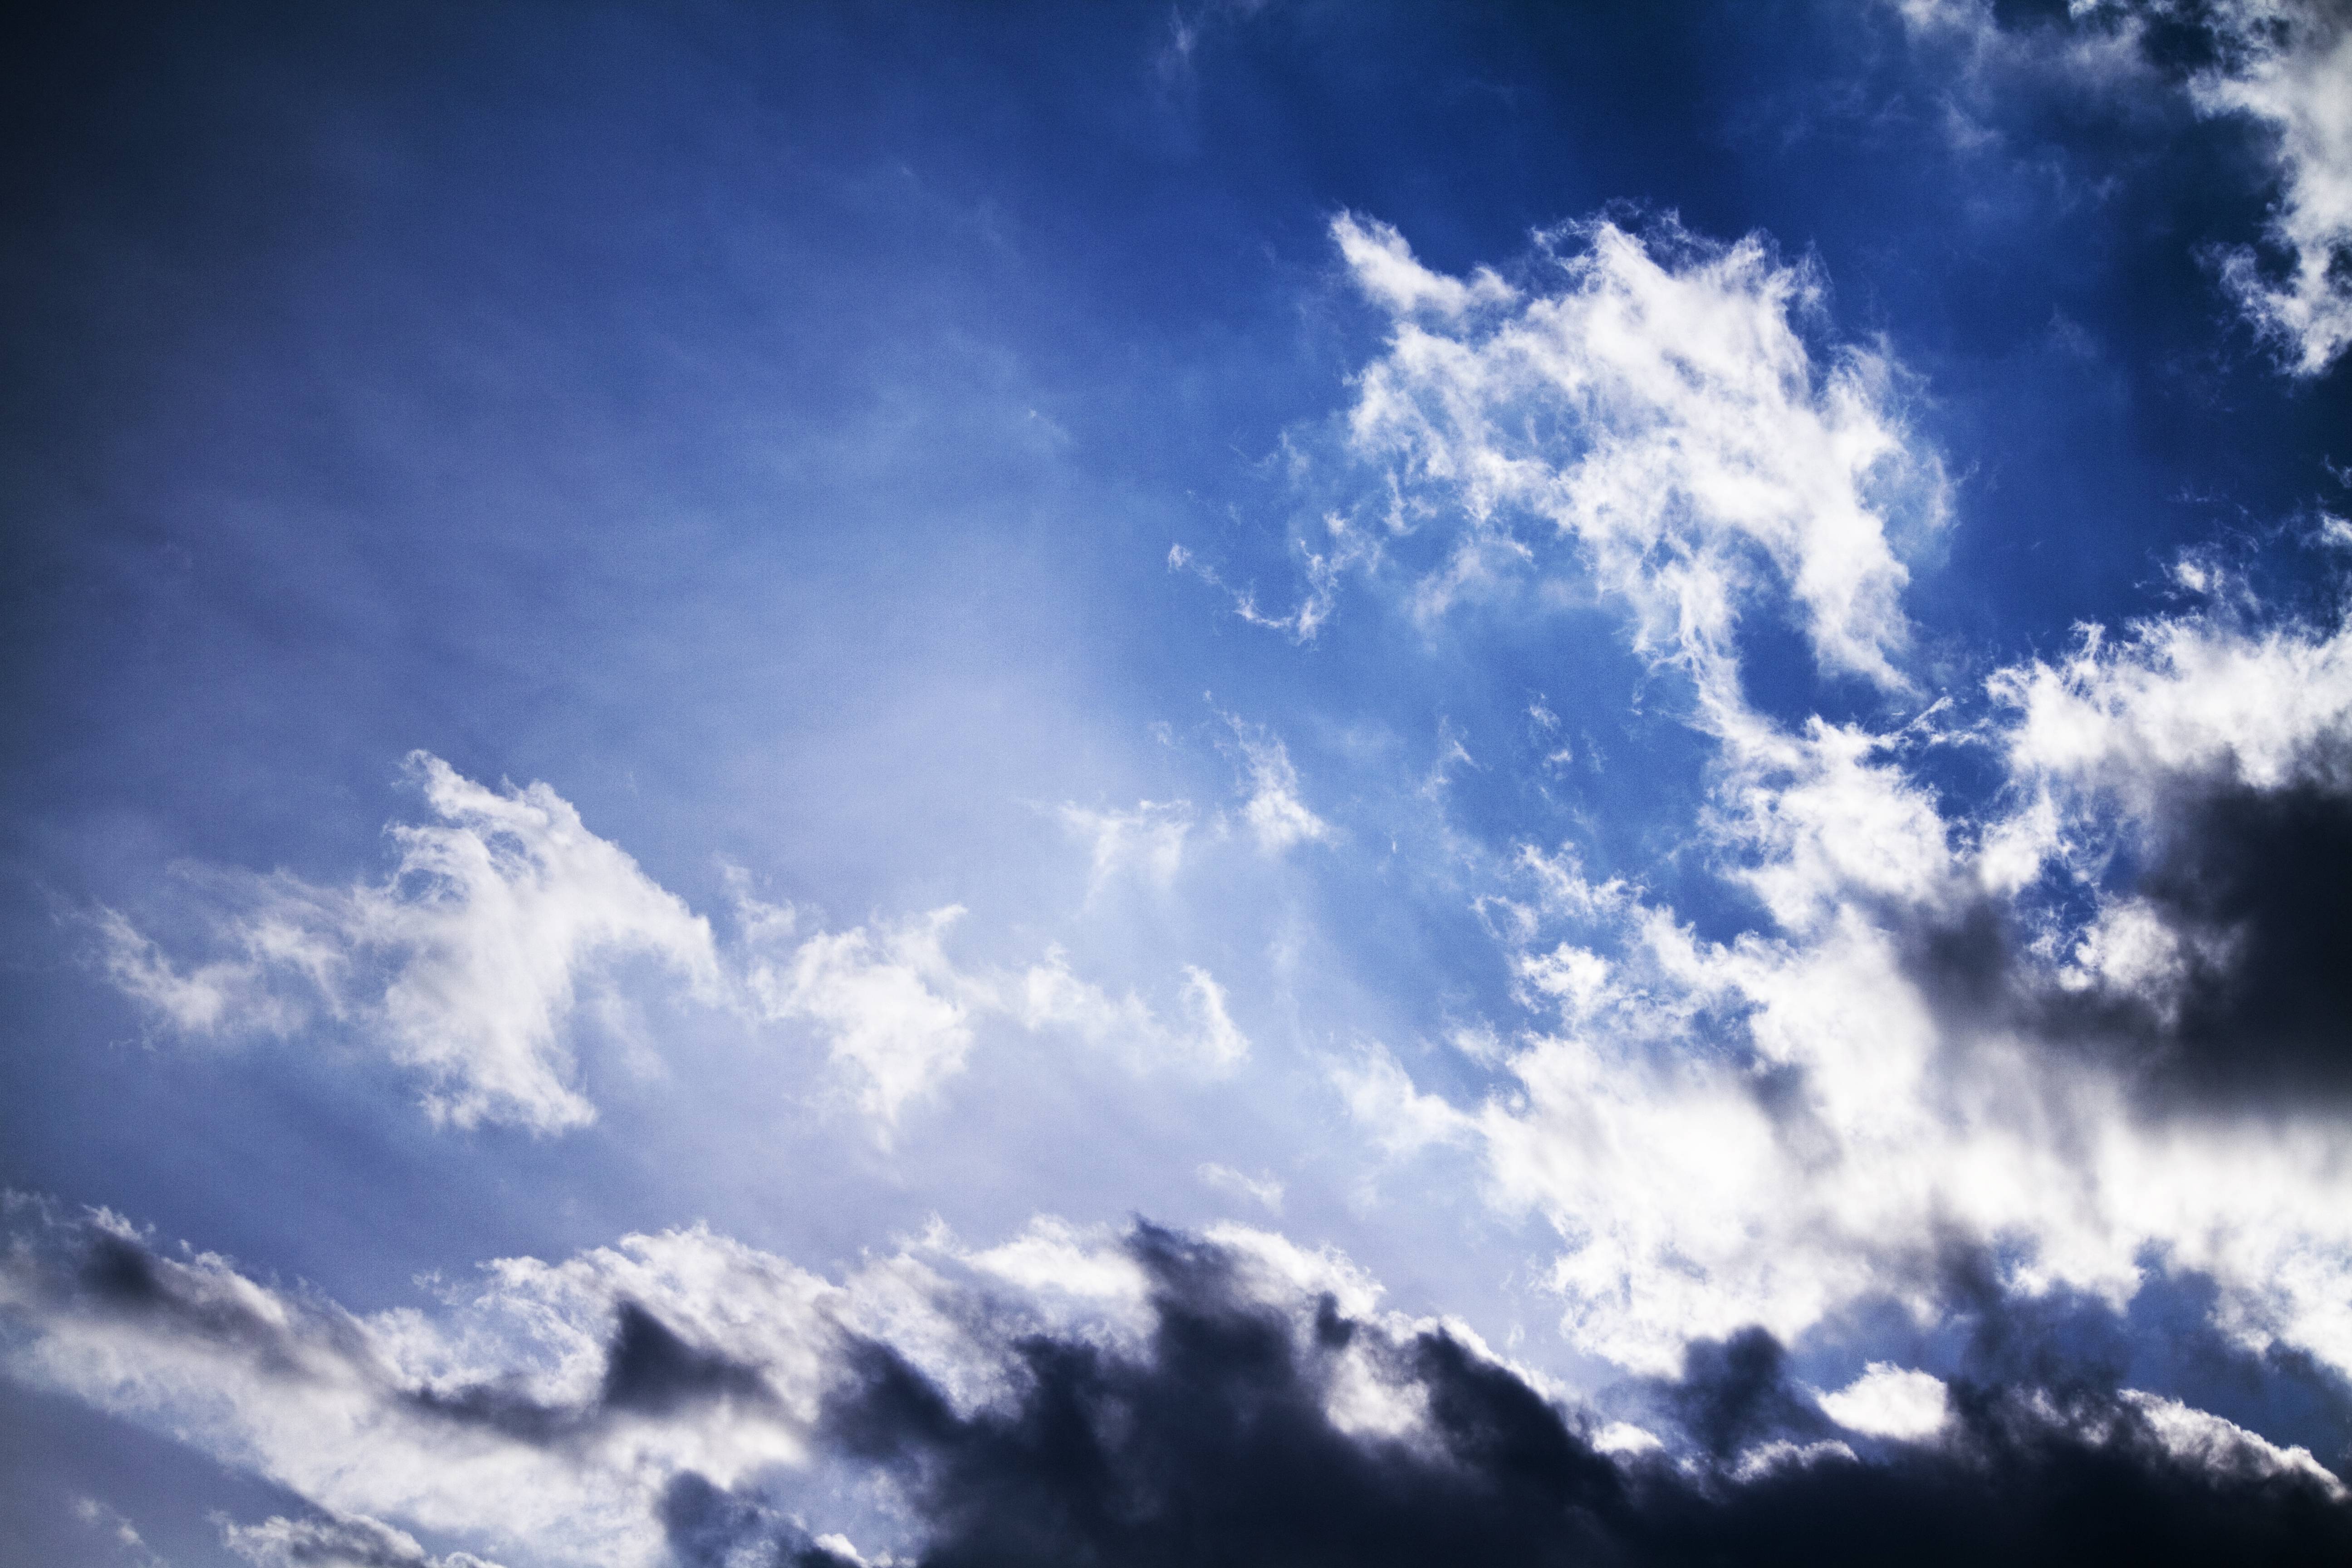 MichaelPocketList: High contrast summer sky and clouds [5184x3456][OC]